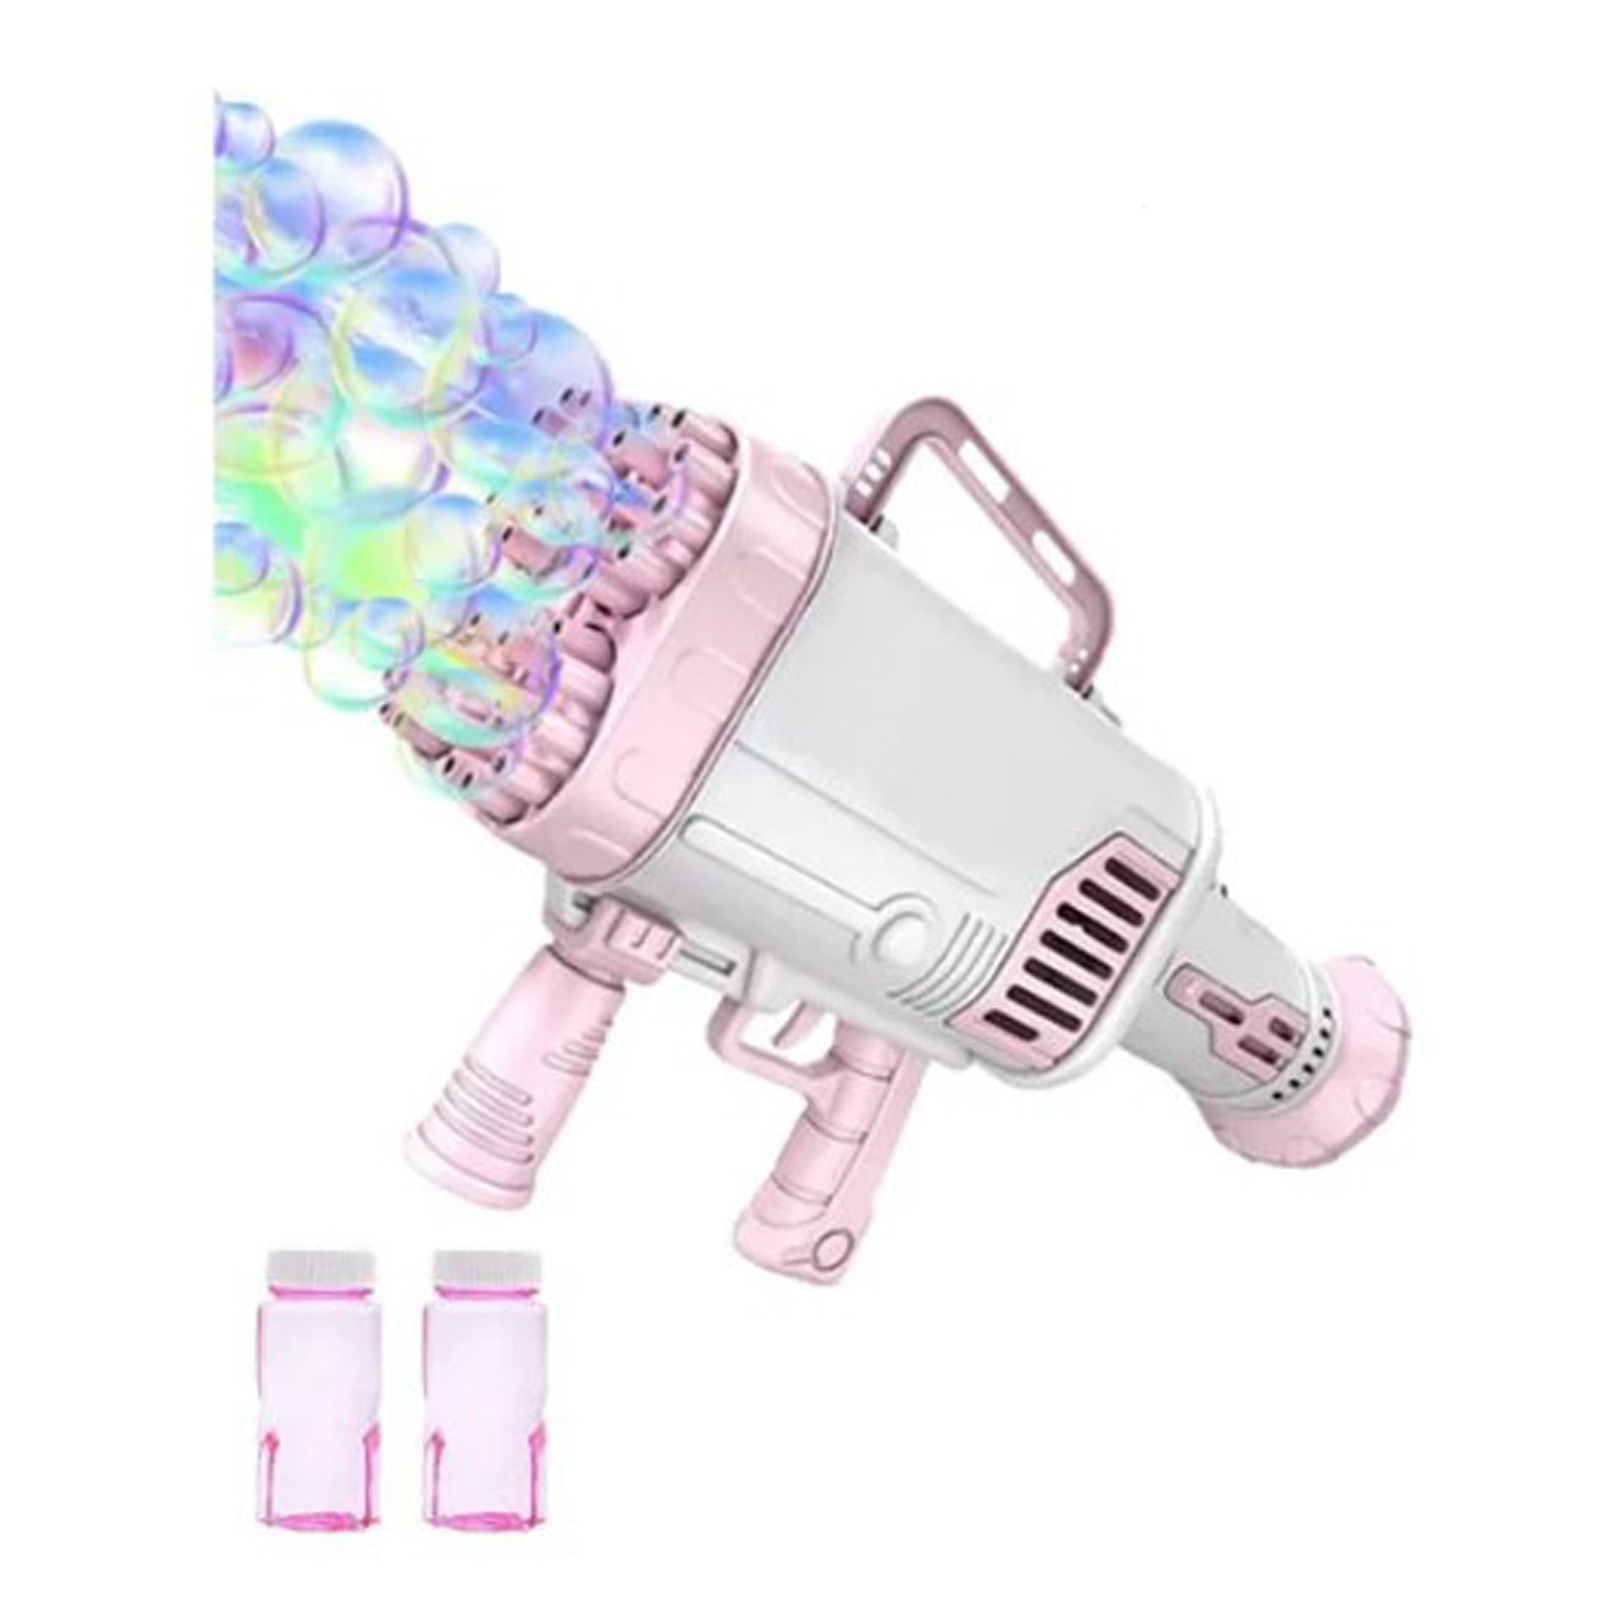 Пушка-Генератор мыльных пузырей Market toys lab розовый генератор мыльных пузырей лягушонок в наборе мыльный раствор